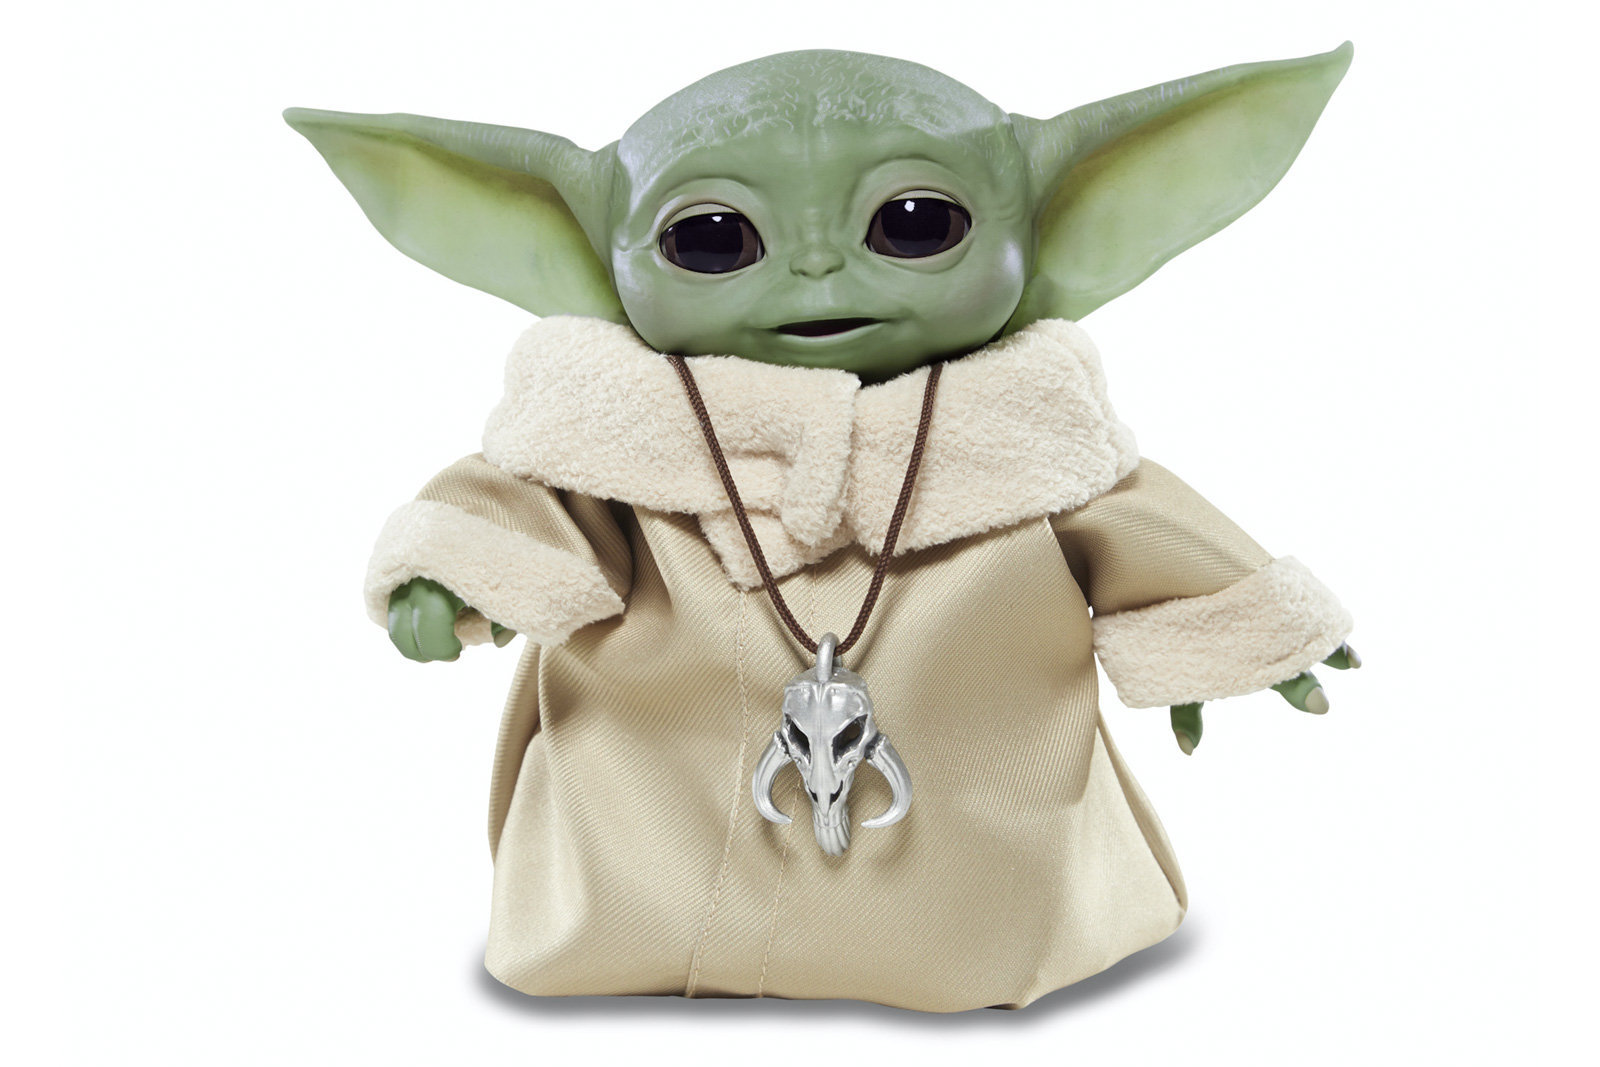 Baby Yoda oyuncağı güçlerini kullanmaya geliyor